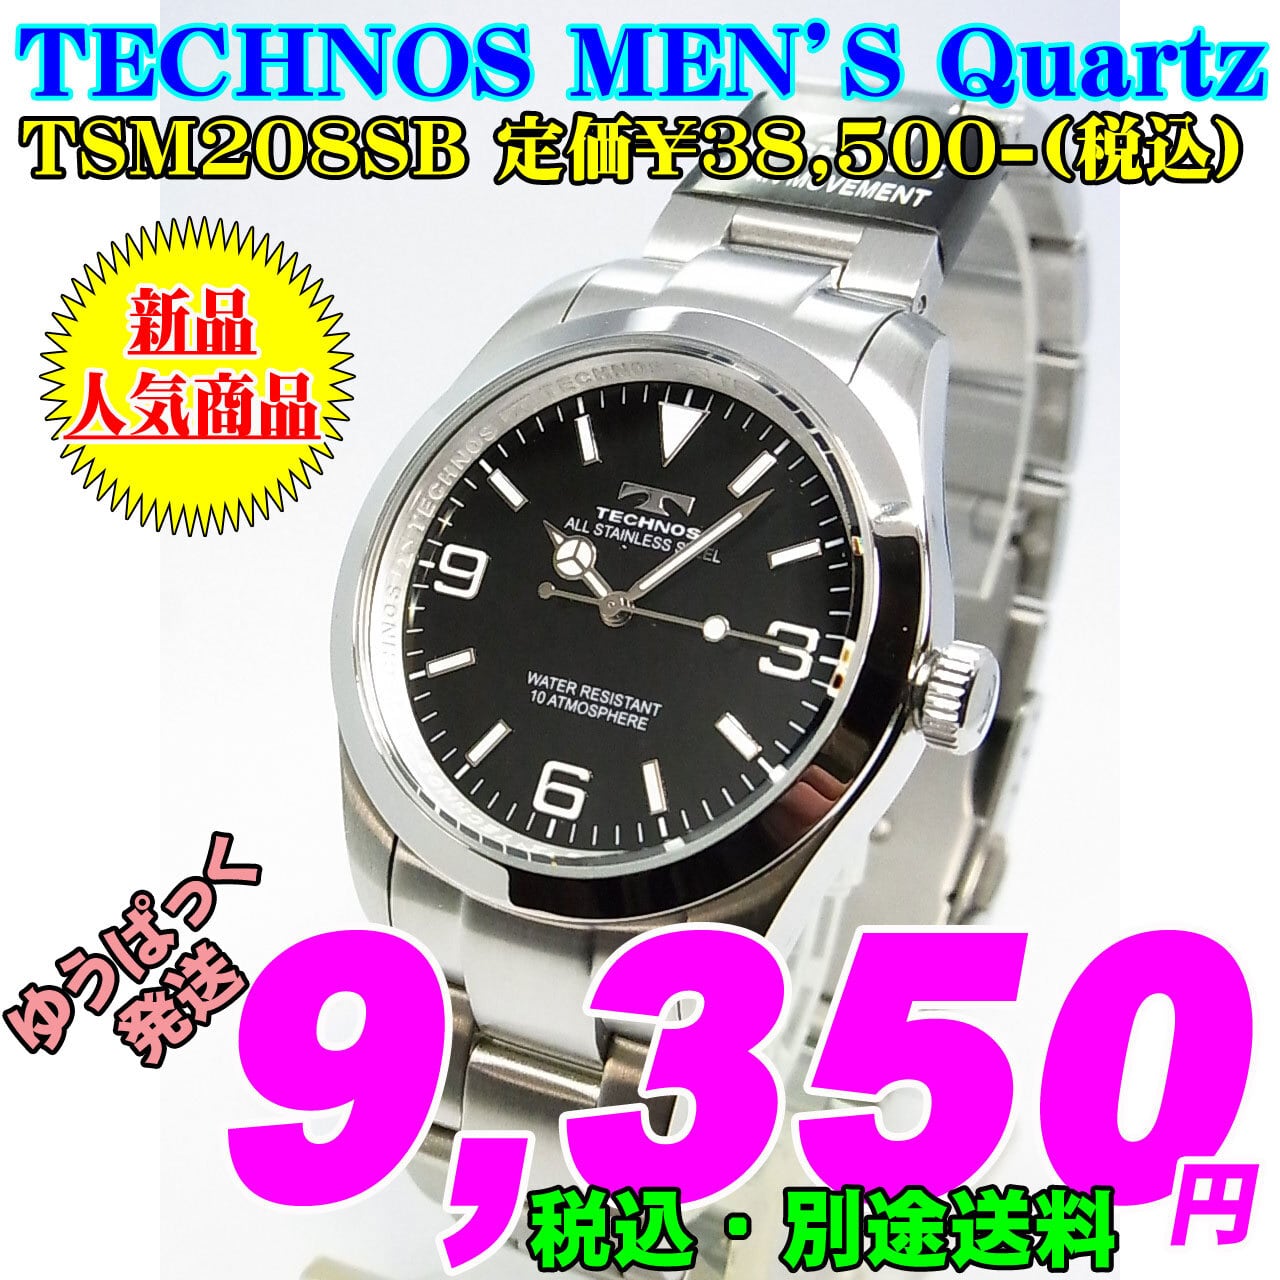 新品 TECHNOS テクノス オールステンレス メンズ腕時計 TSM208SB